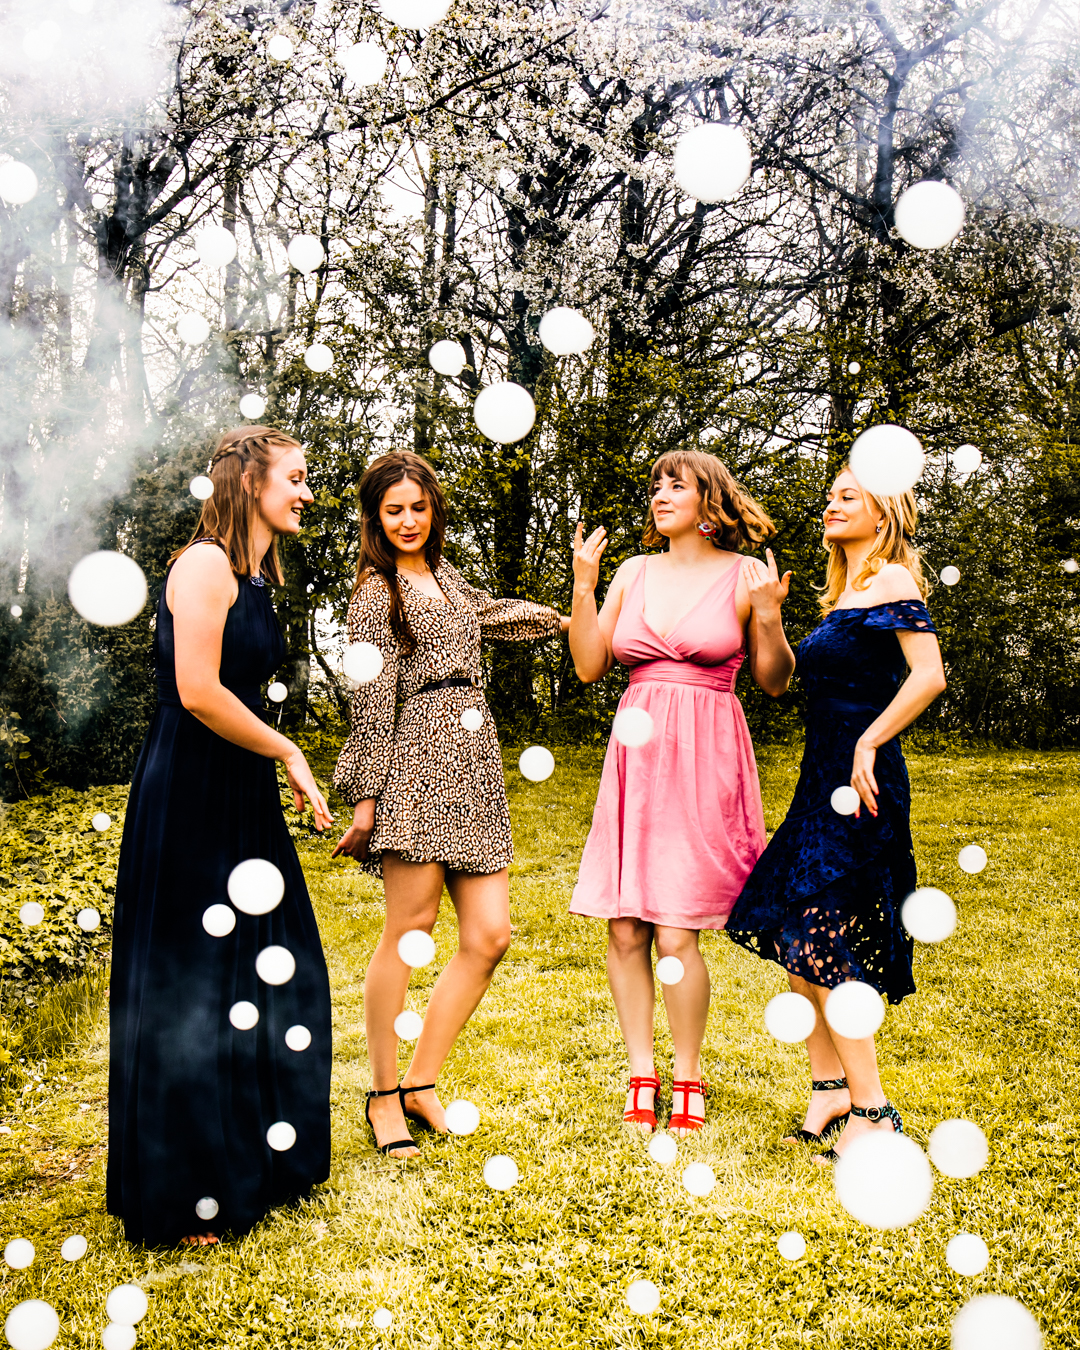 Vier Frauen in festlicher Kleidung haben Spaß in einem Garten, umgeben von einzigartigen weißen Seifenblasen (Nebelzauber) gefüllt mit Nebel. Die Bäume im Hintergrund sind voller Blüten, was eine fröhliche und feierliche Atmosphäre unterstreicht.